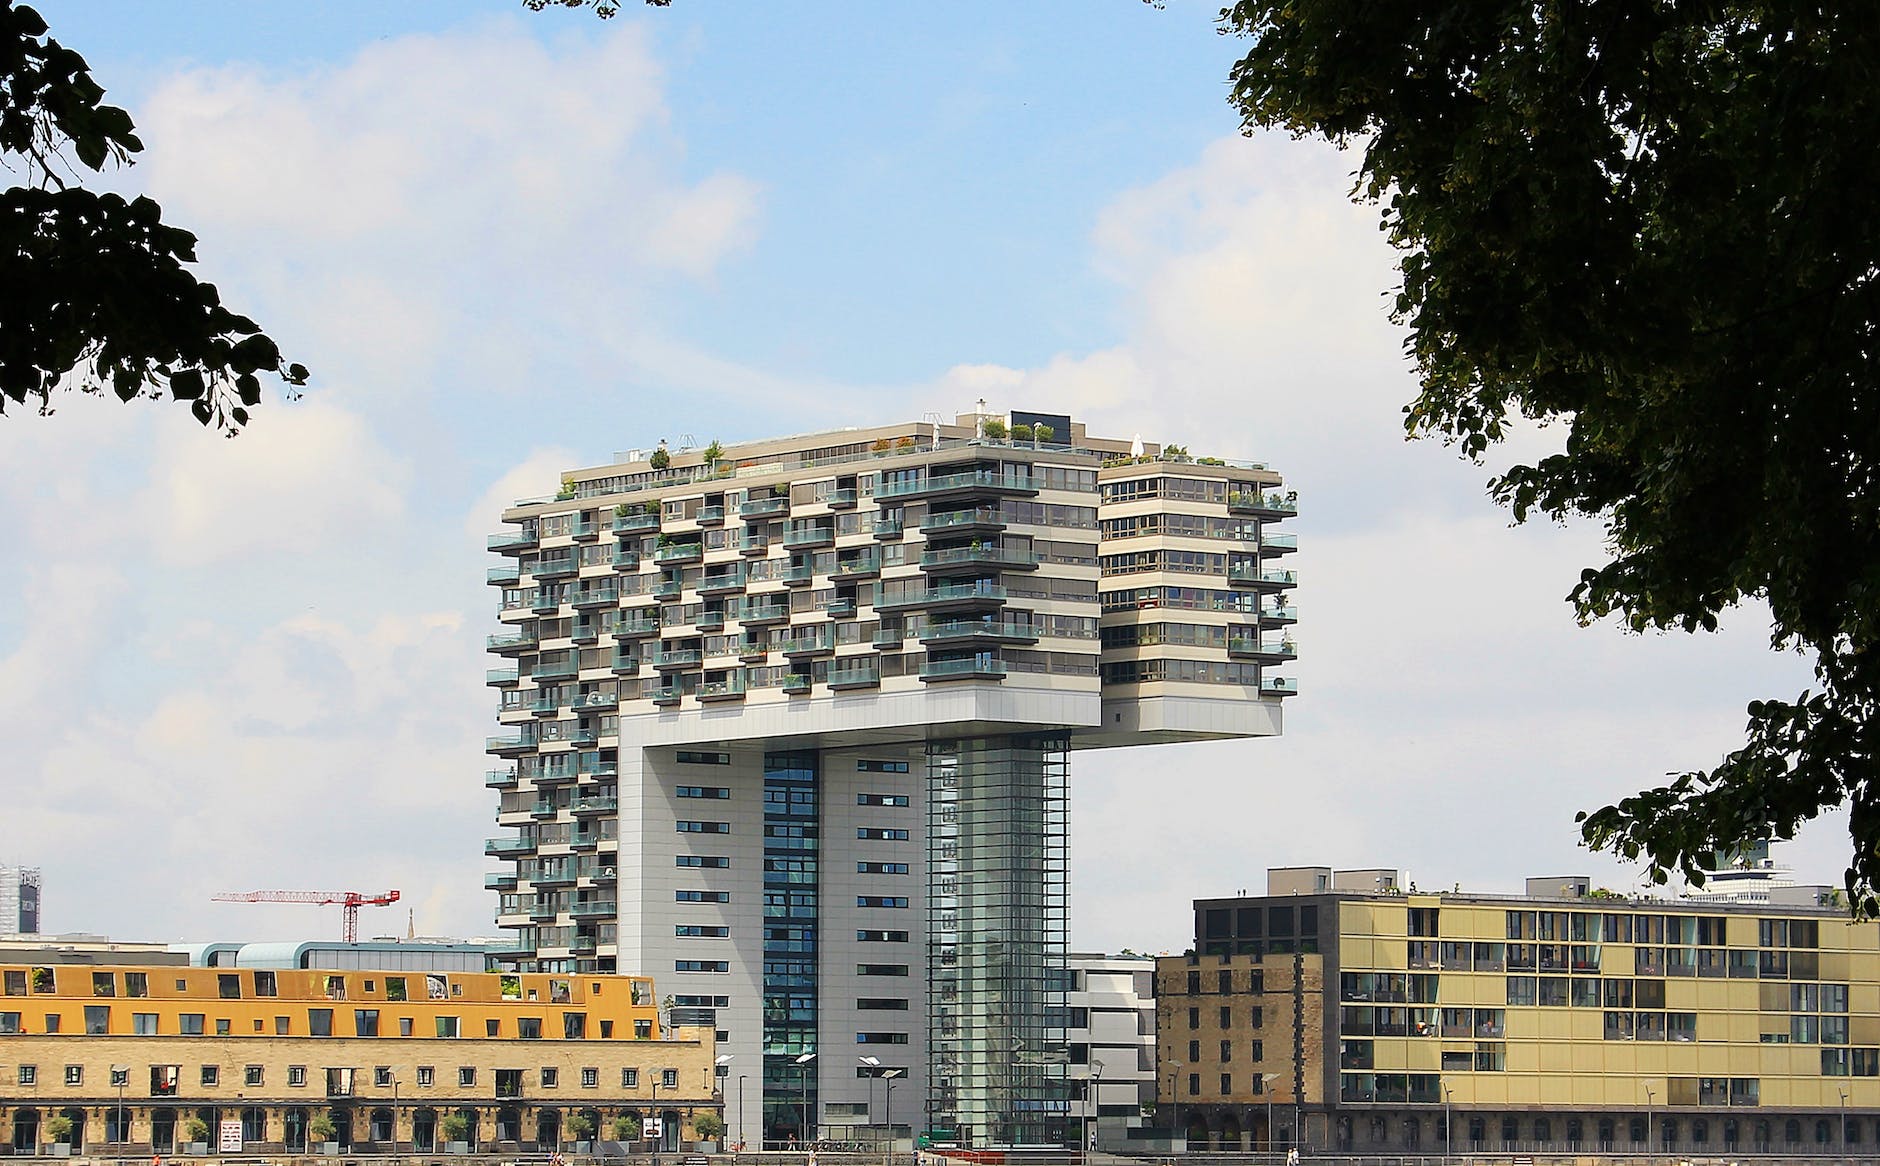 Das Kranhaus Nord im Rheinauhafen beherbergt 133 Wohnungen mit spektakulärer Aussicht.